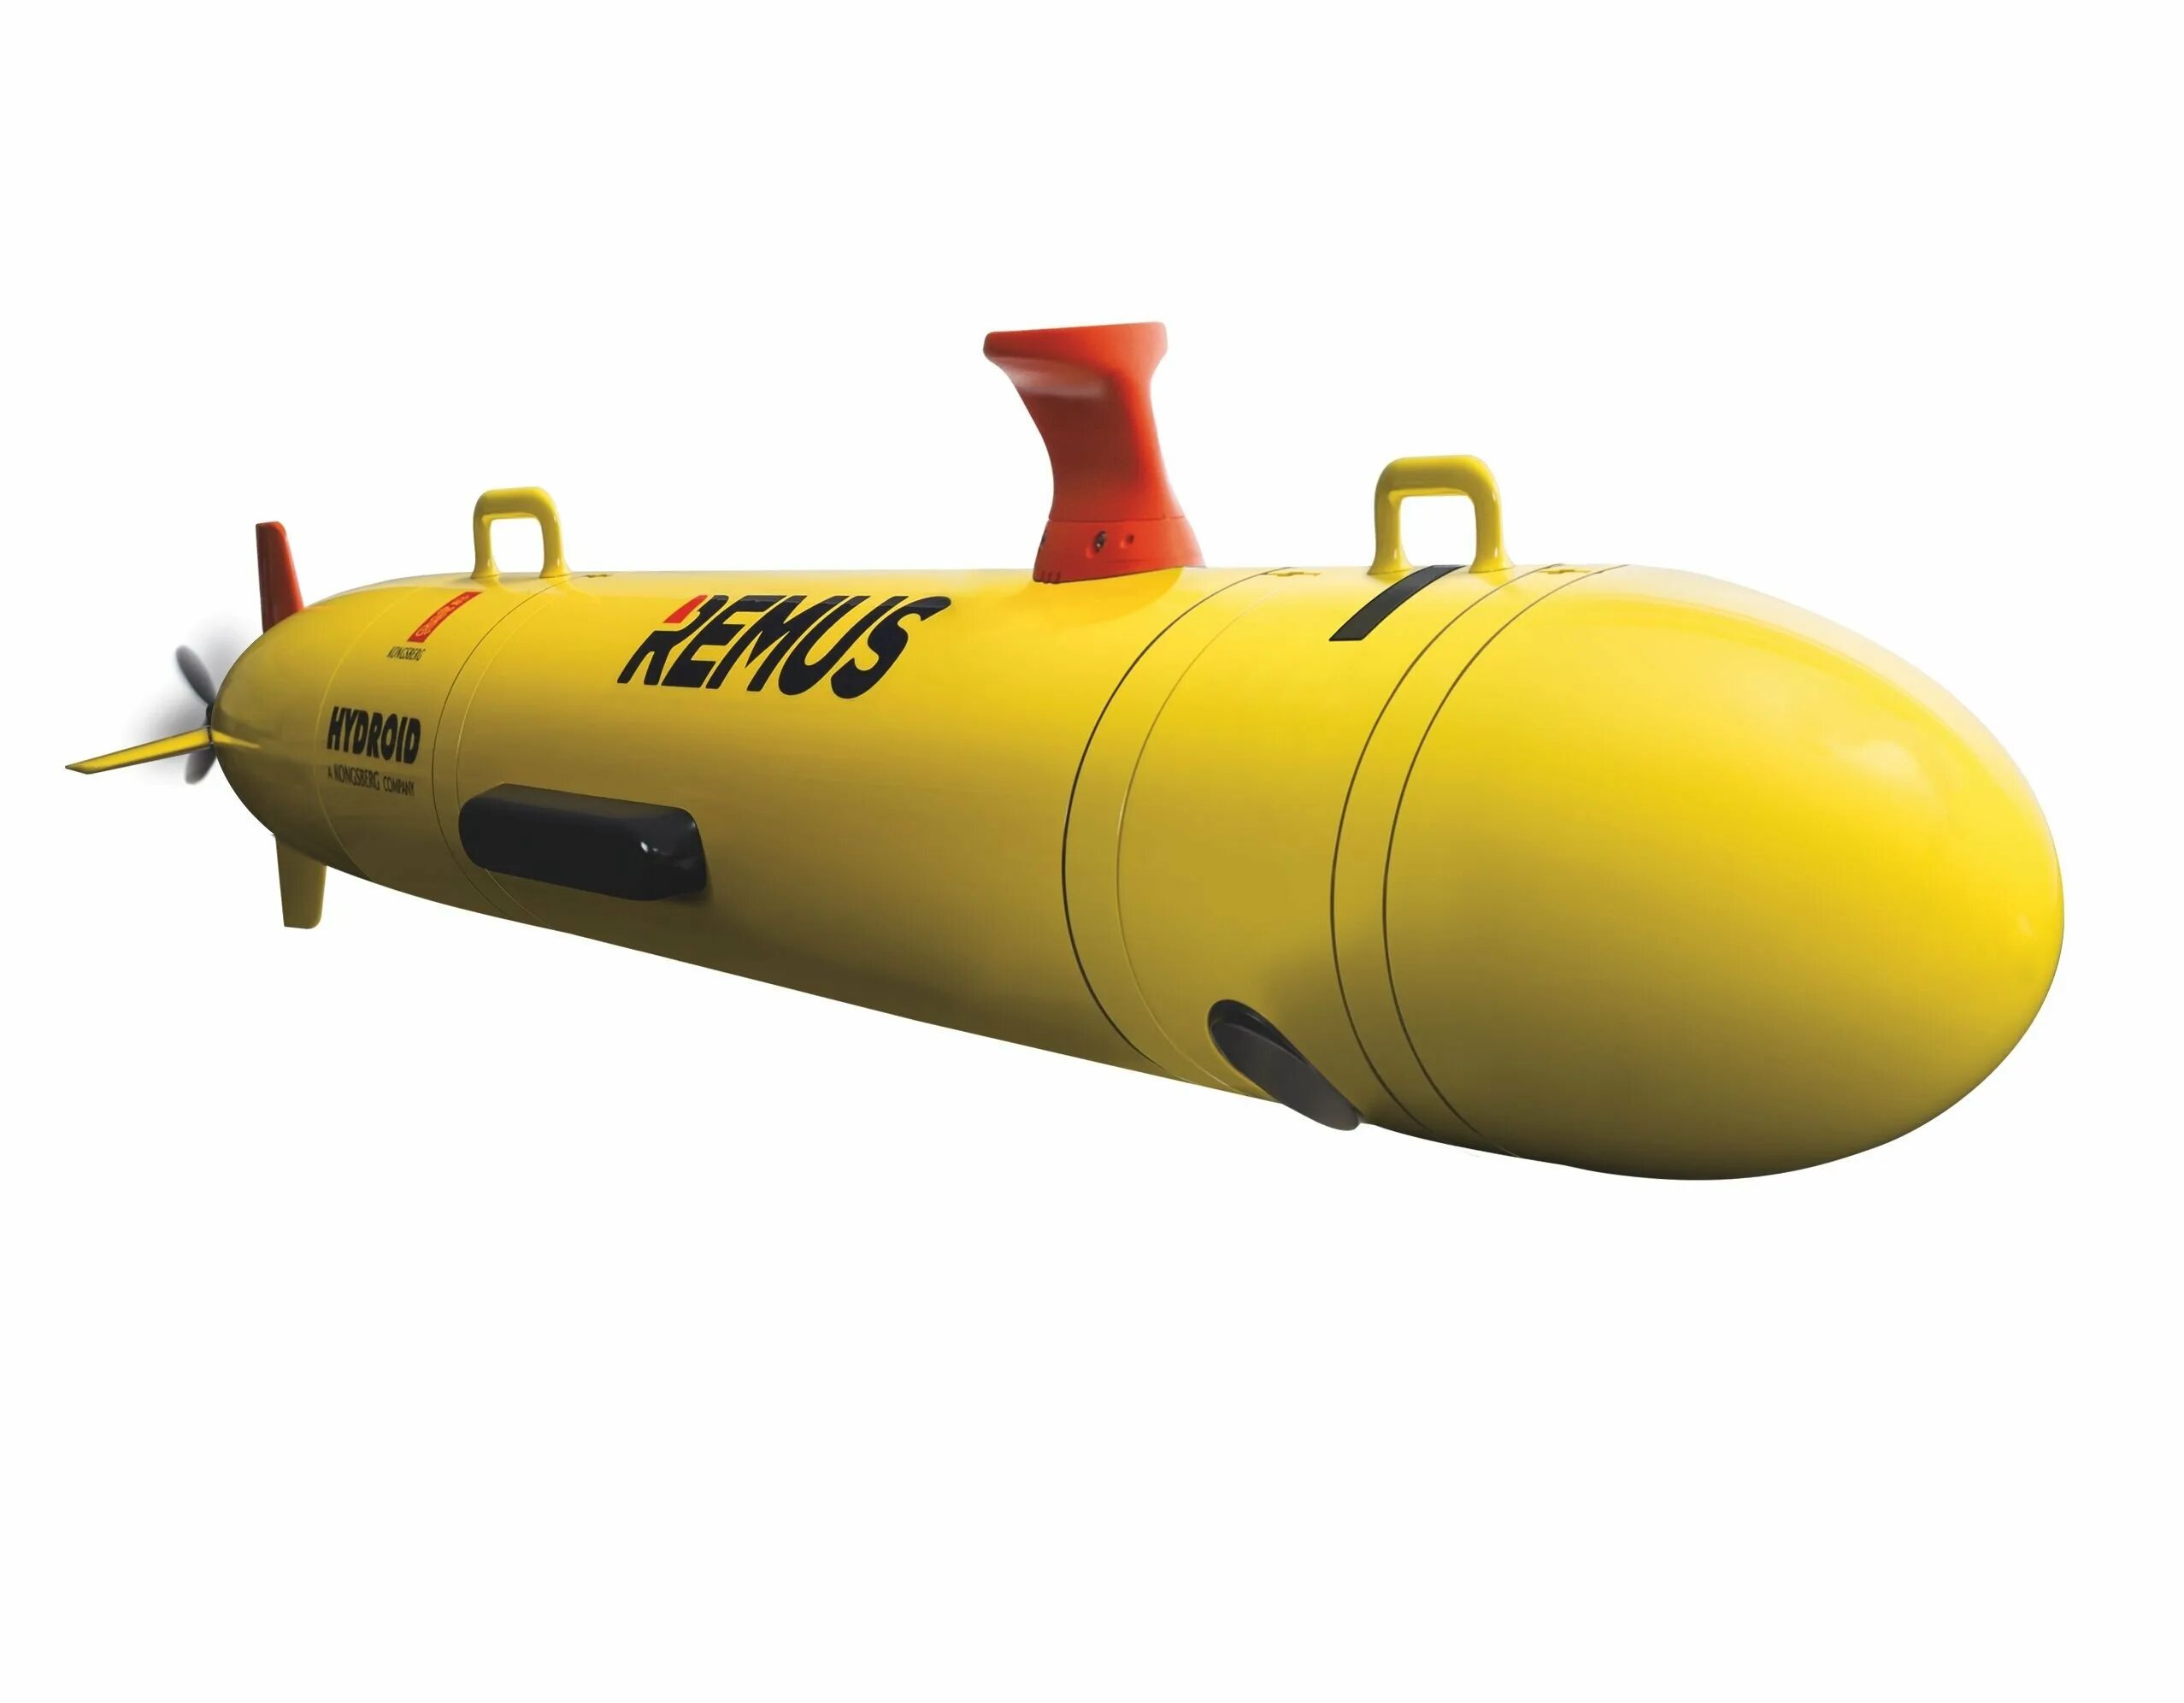 Remus 600. Автономный подводный аппарат Remus 100. Remus 100 AUV (remus100.m). АНПА Remus 6000. Автономный подводный аппарат Seal 5000.